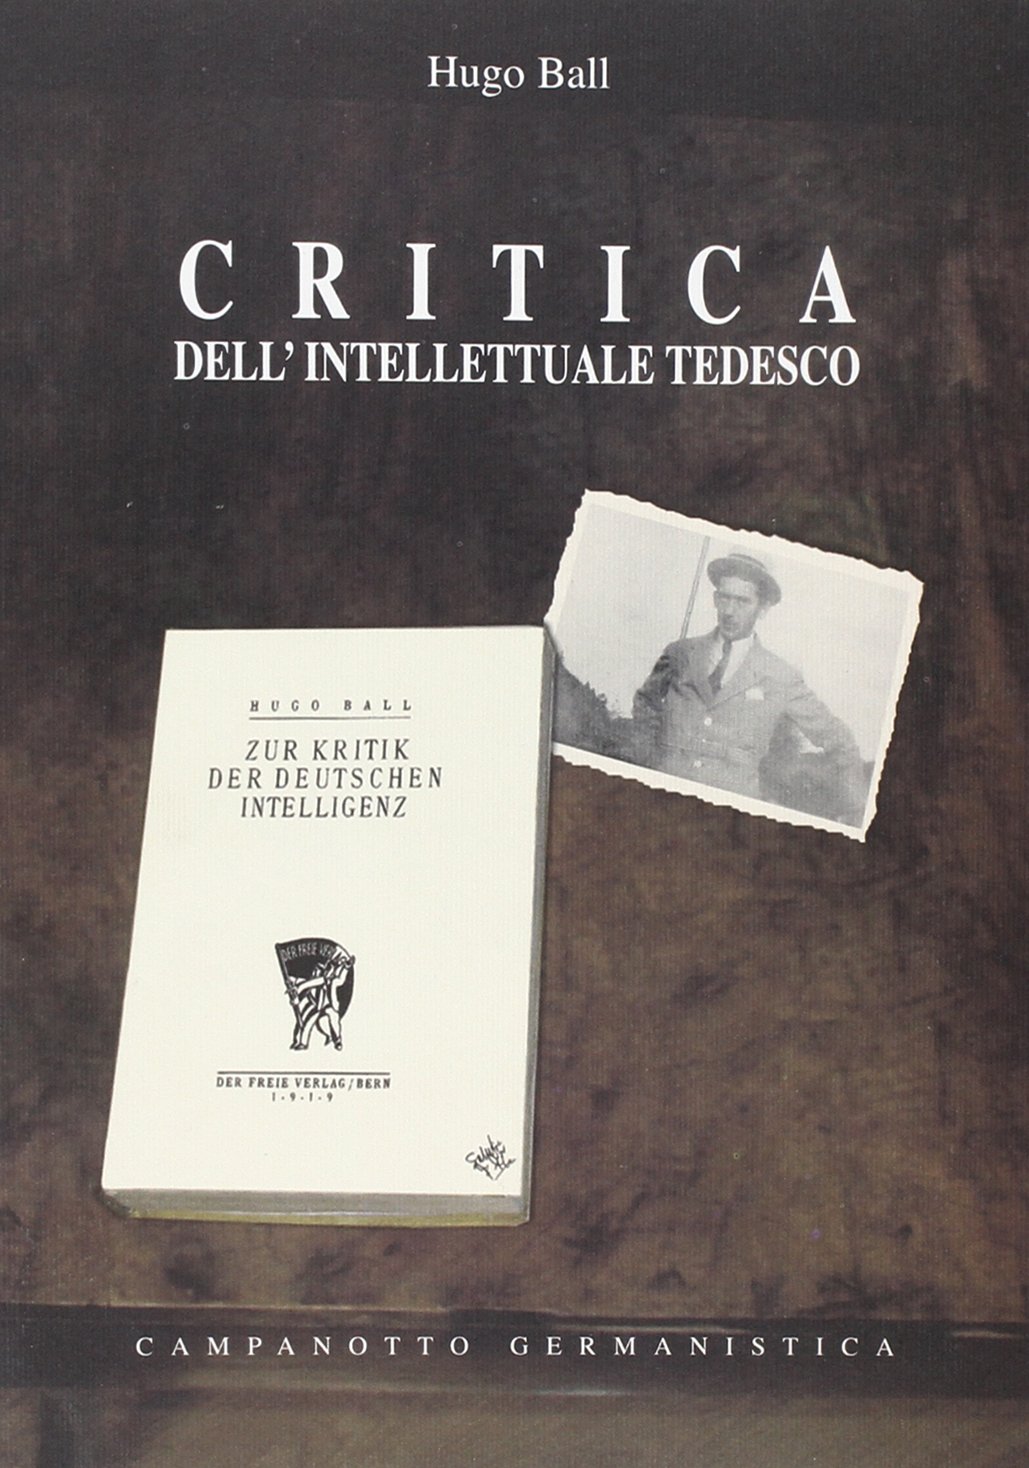 Libri Hugo Ball - Critica Dell'intellettuale Tedesco NUOVO SIGILLATO, EDIZIONE DEL 01/01/2007 SUBITO DISPONIBILE